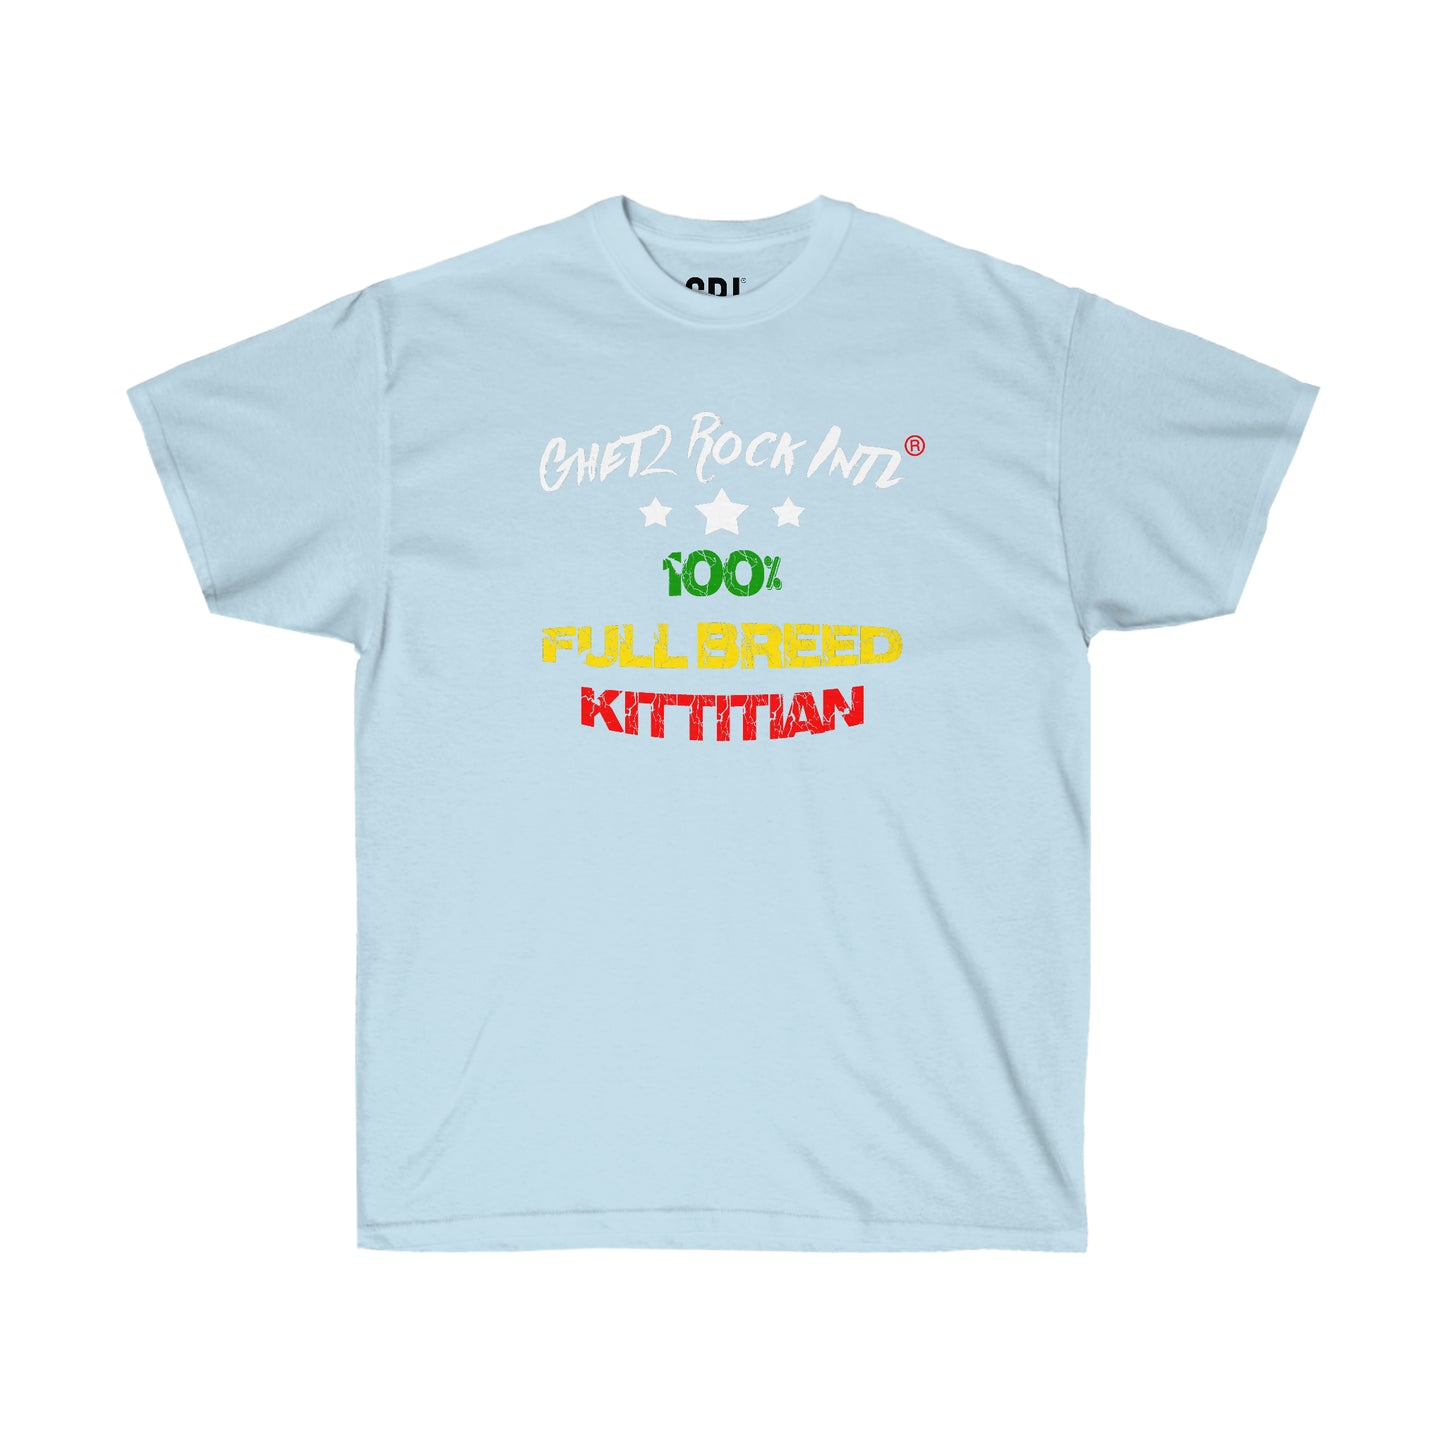 100% Full Breed Kittitian V1 Unisex Ultra Cotton Tee